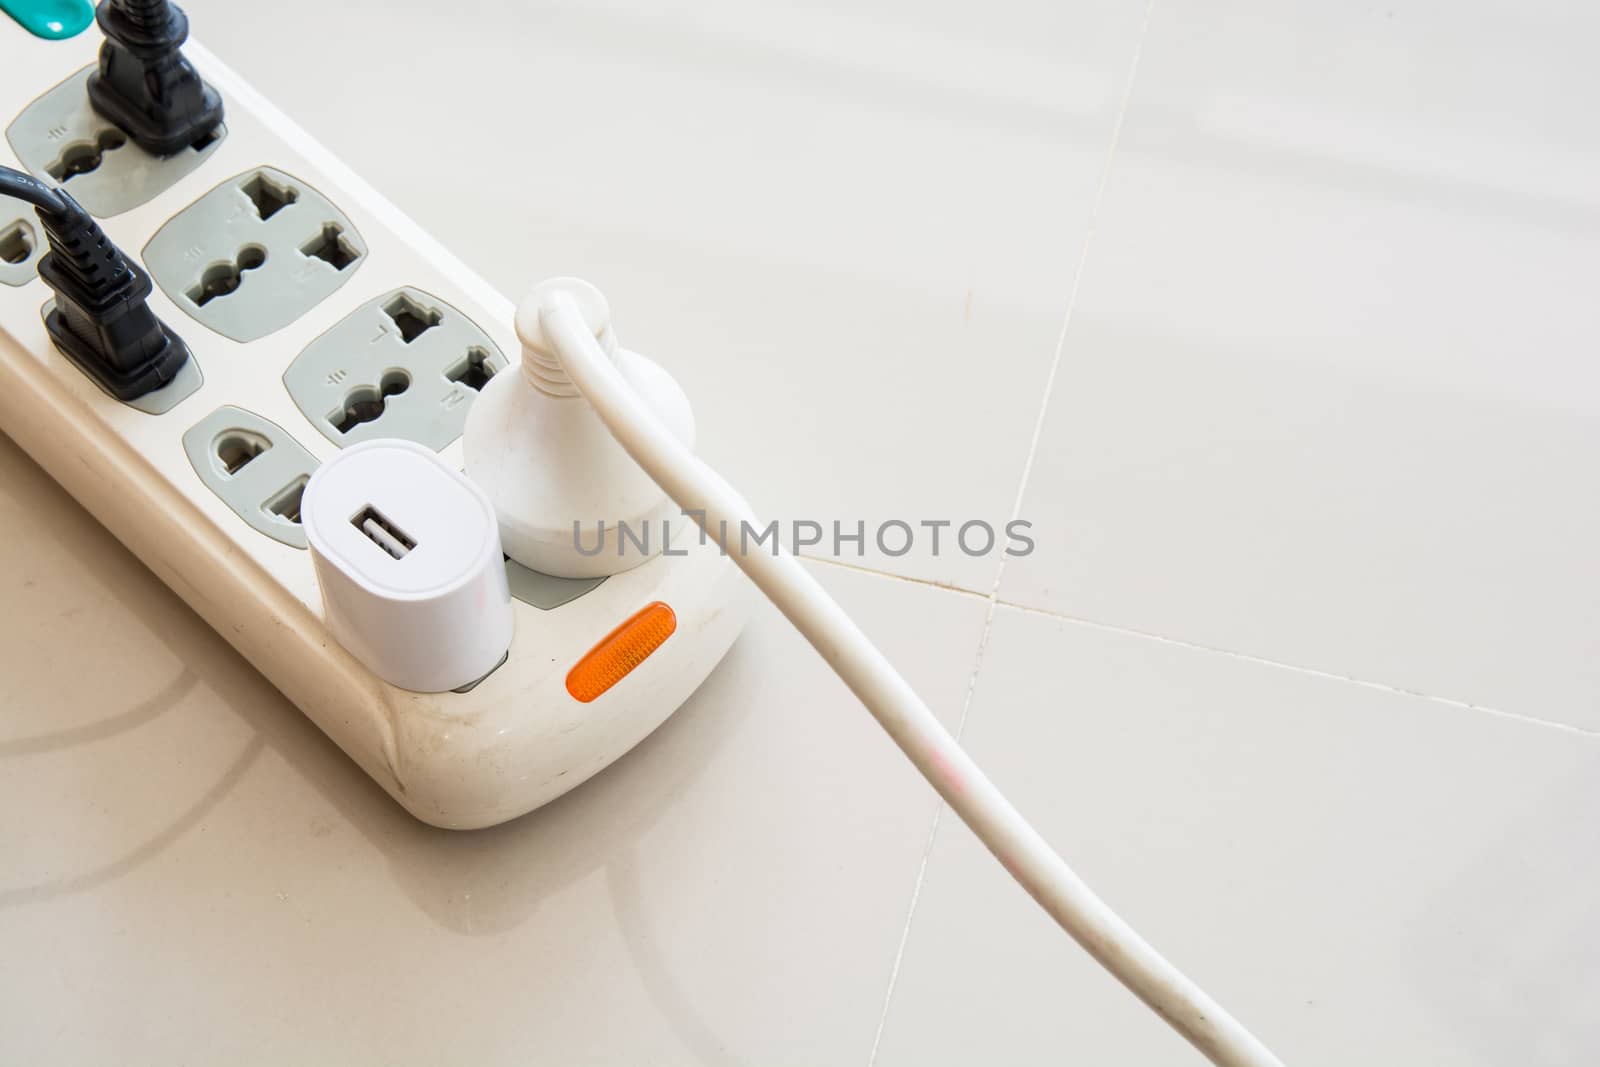 plugs in the socket by faa069913827